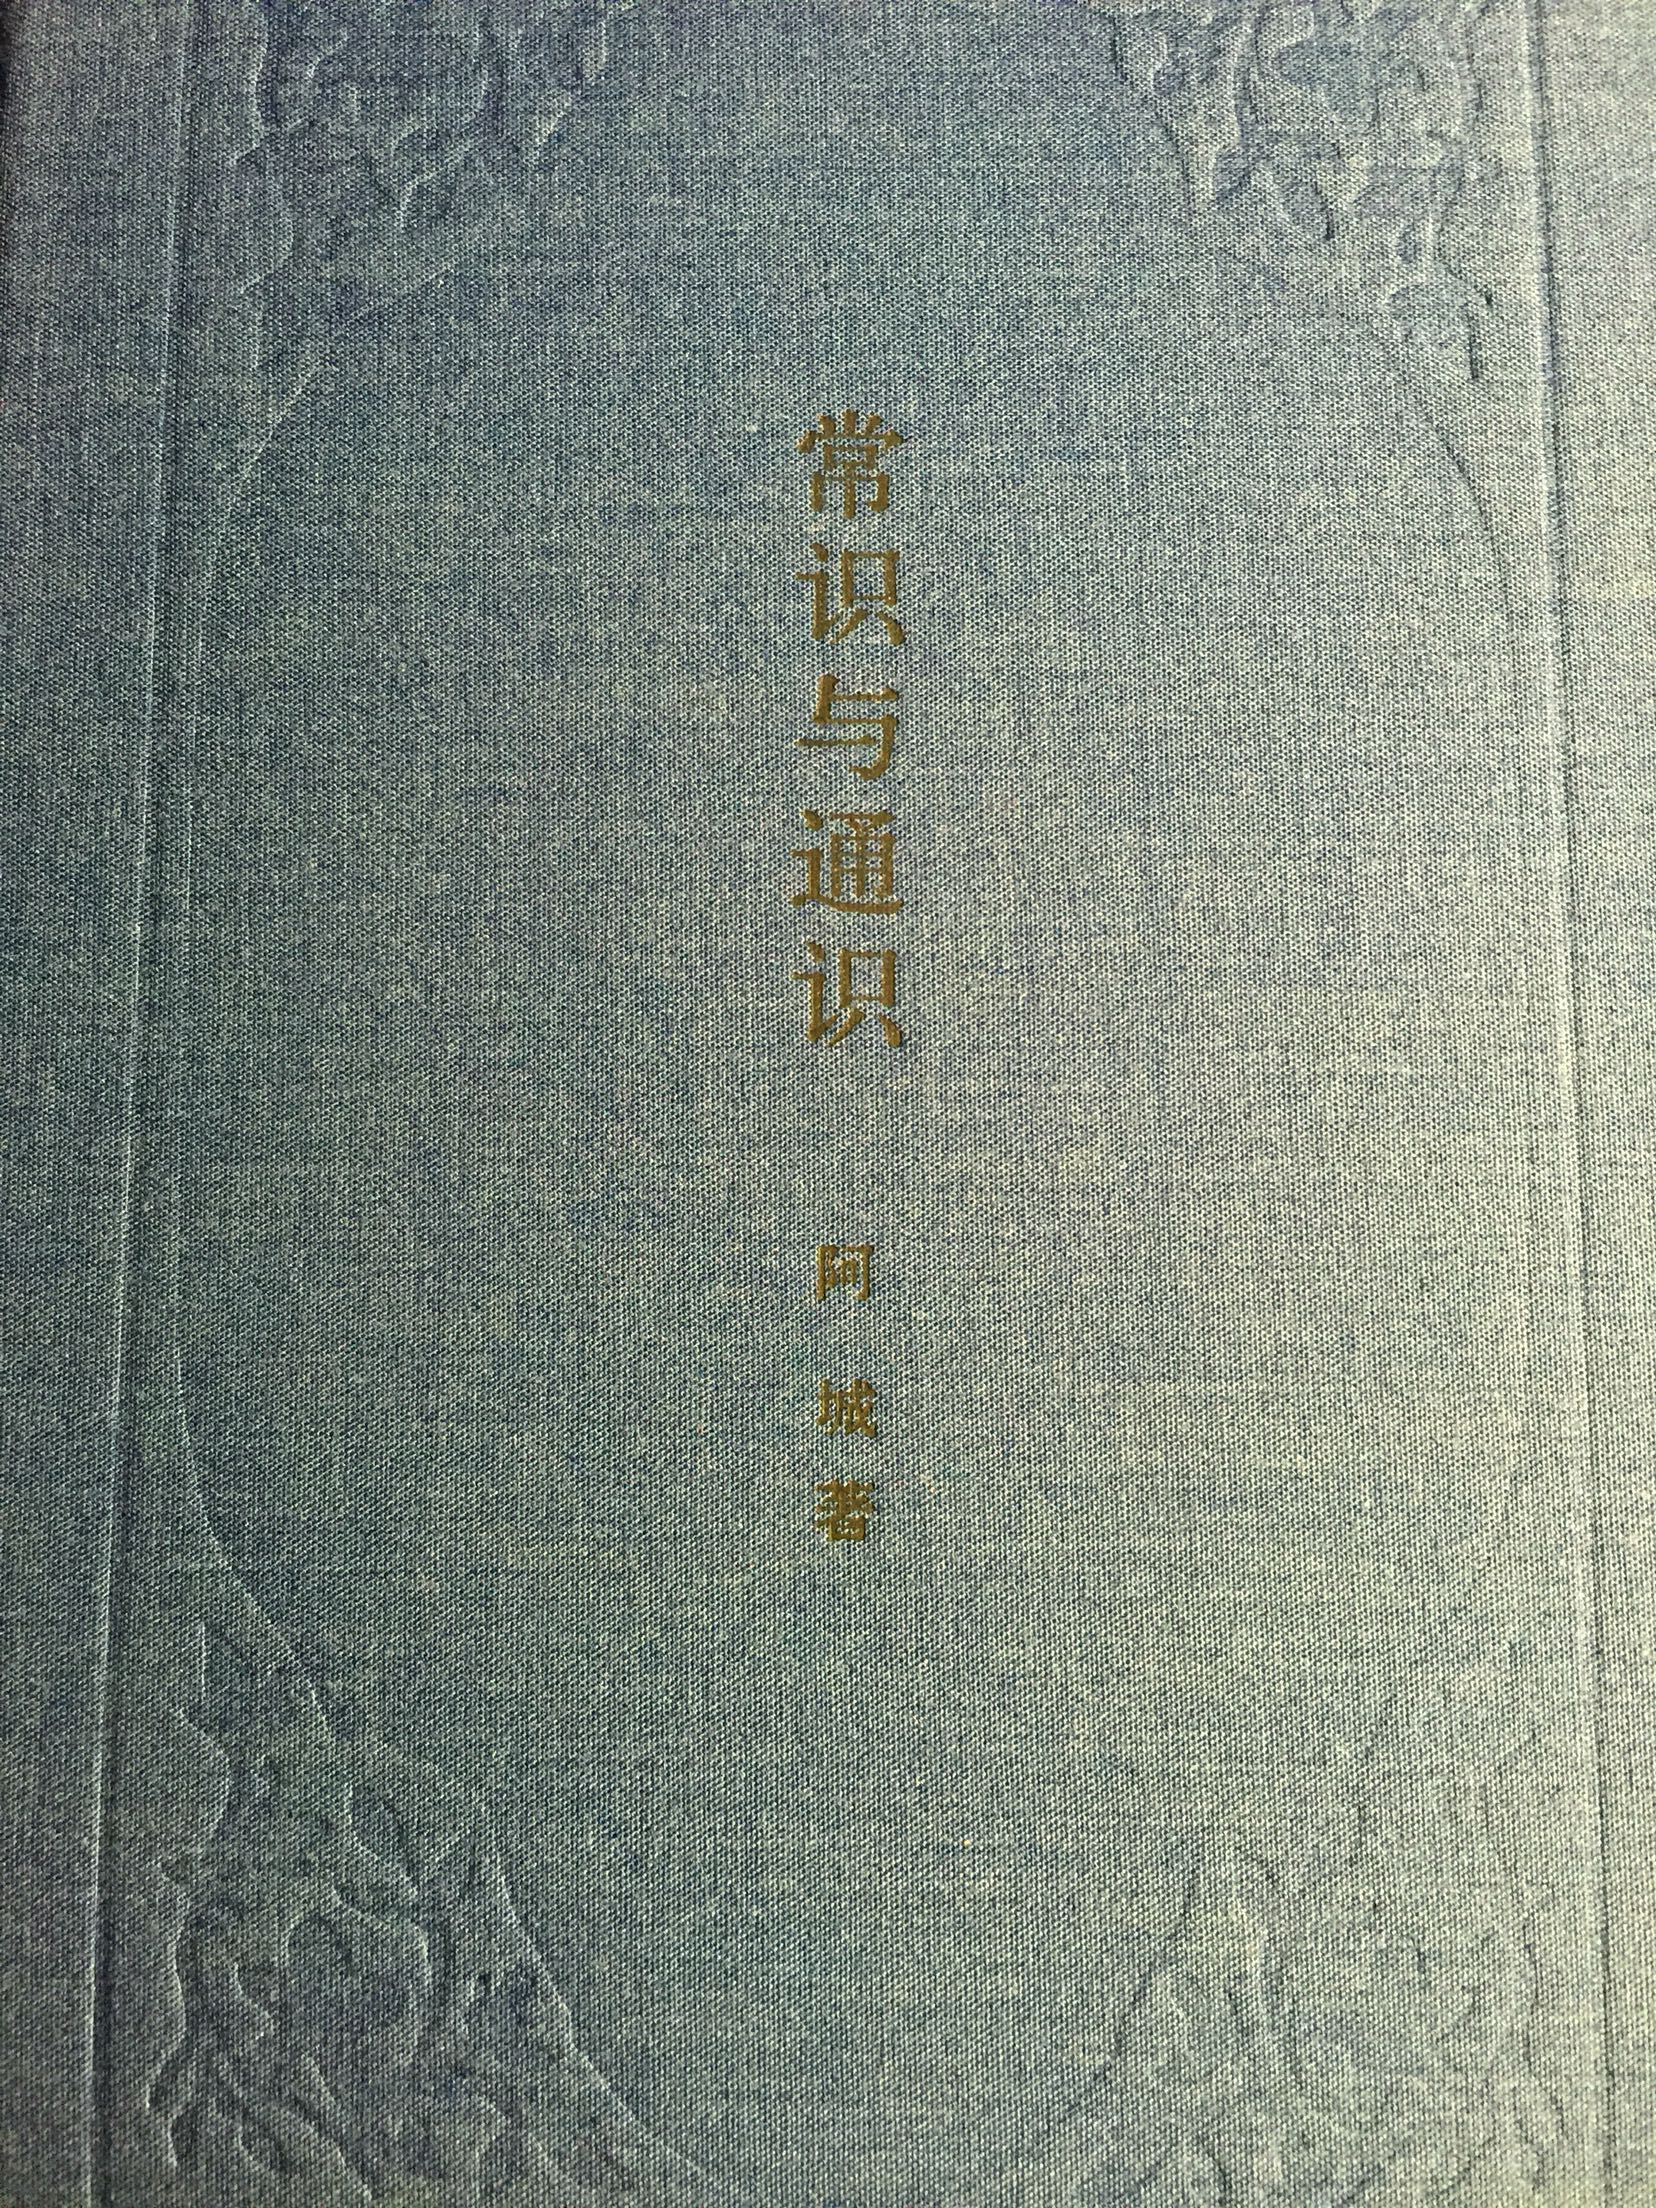 同样是中华书局，瑞古冠中印刷，这本书就做的很好。纸张也很厚实。